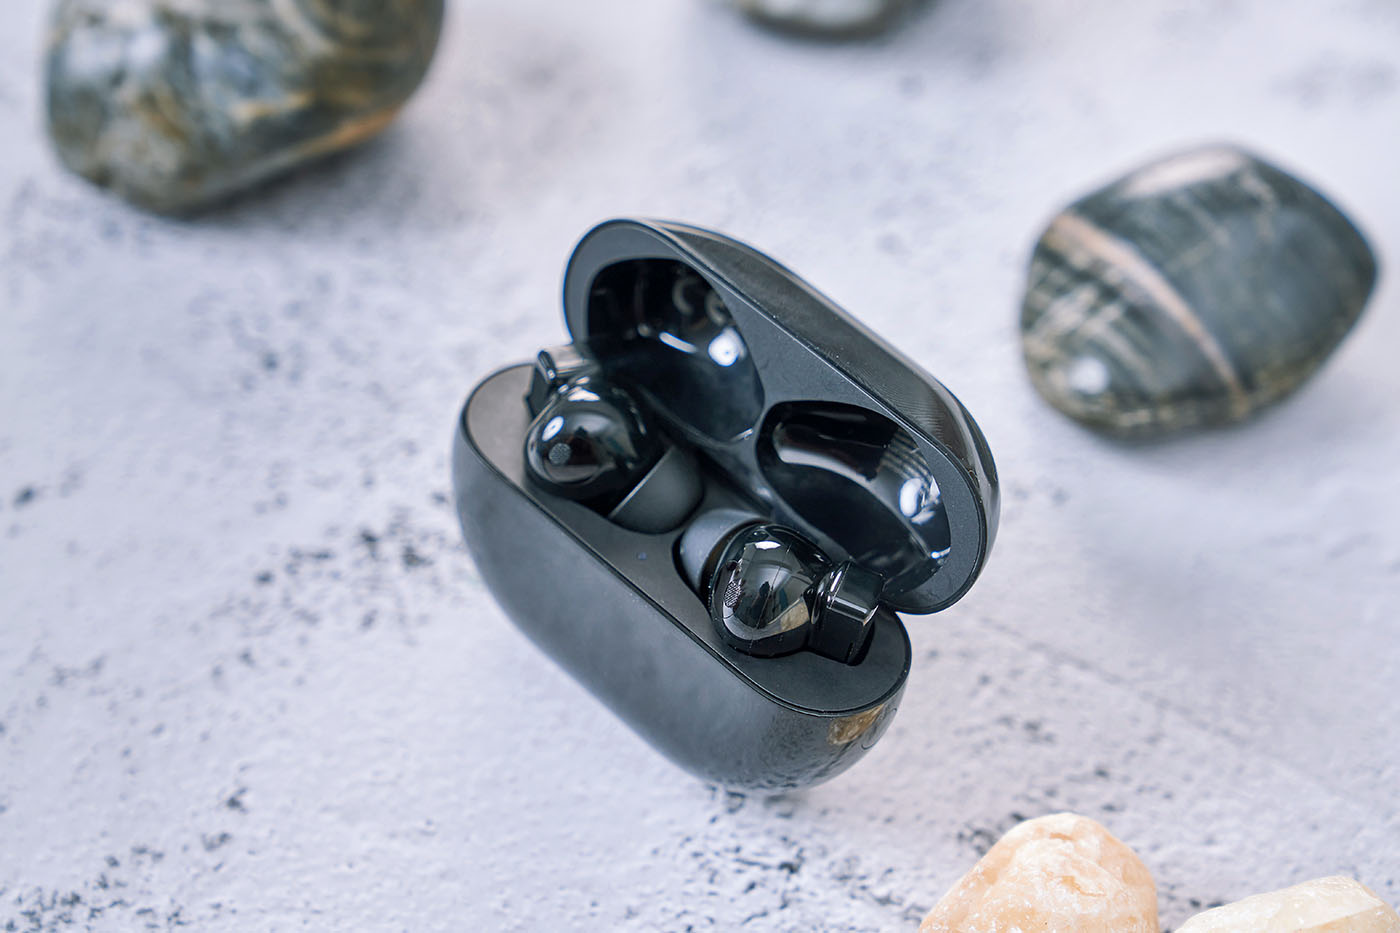 打開充電盒外蓋後，可以看到內部放置的FreeBuds Pro 耳機本體，而盒內凹槽形狀能與耳機外型緊密貼合，做工精緻。